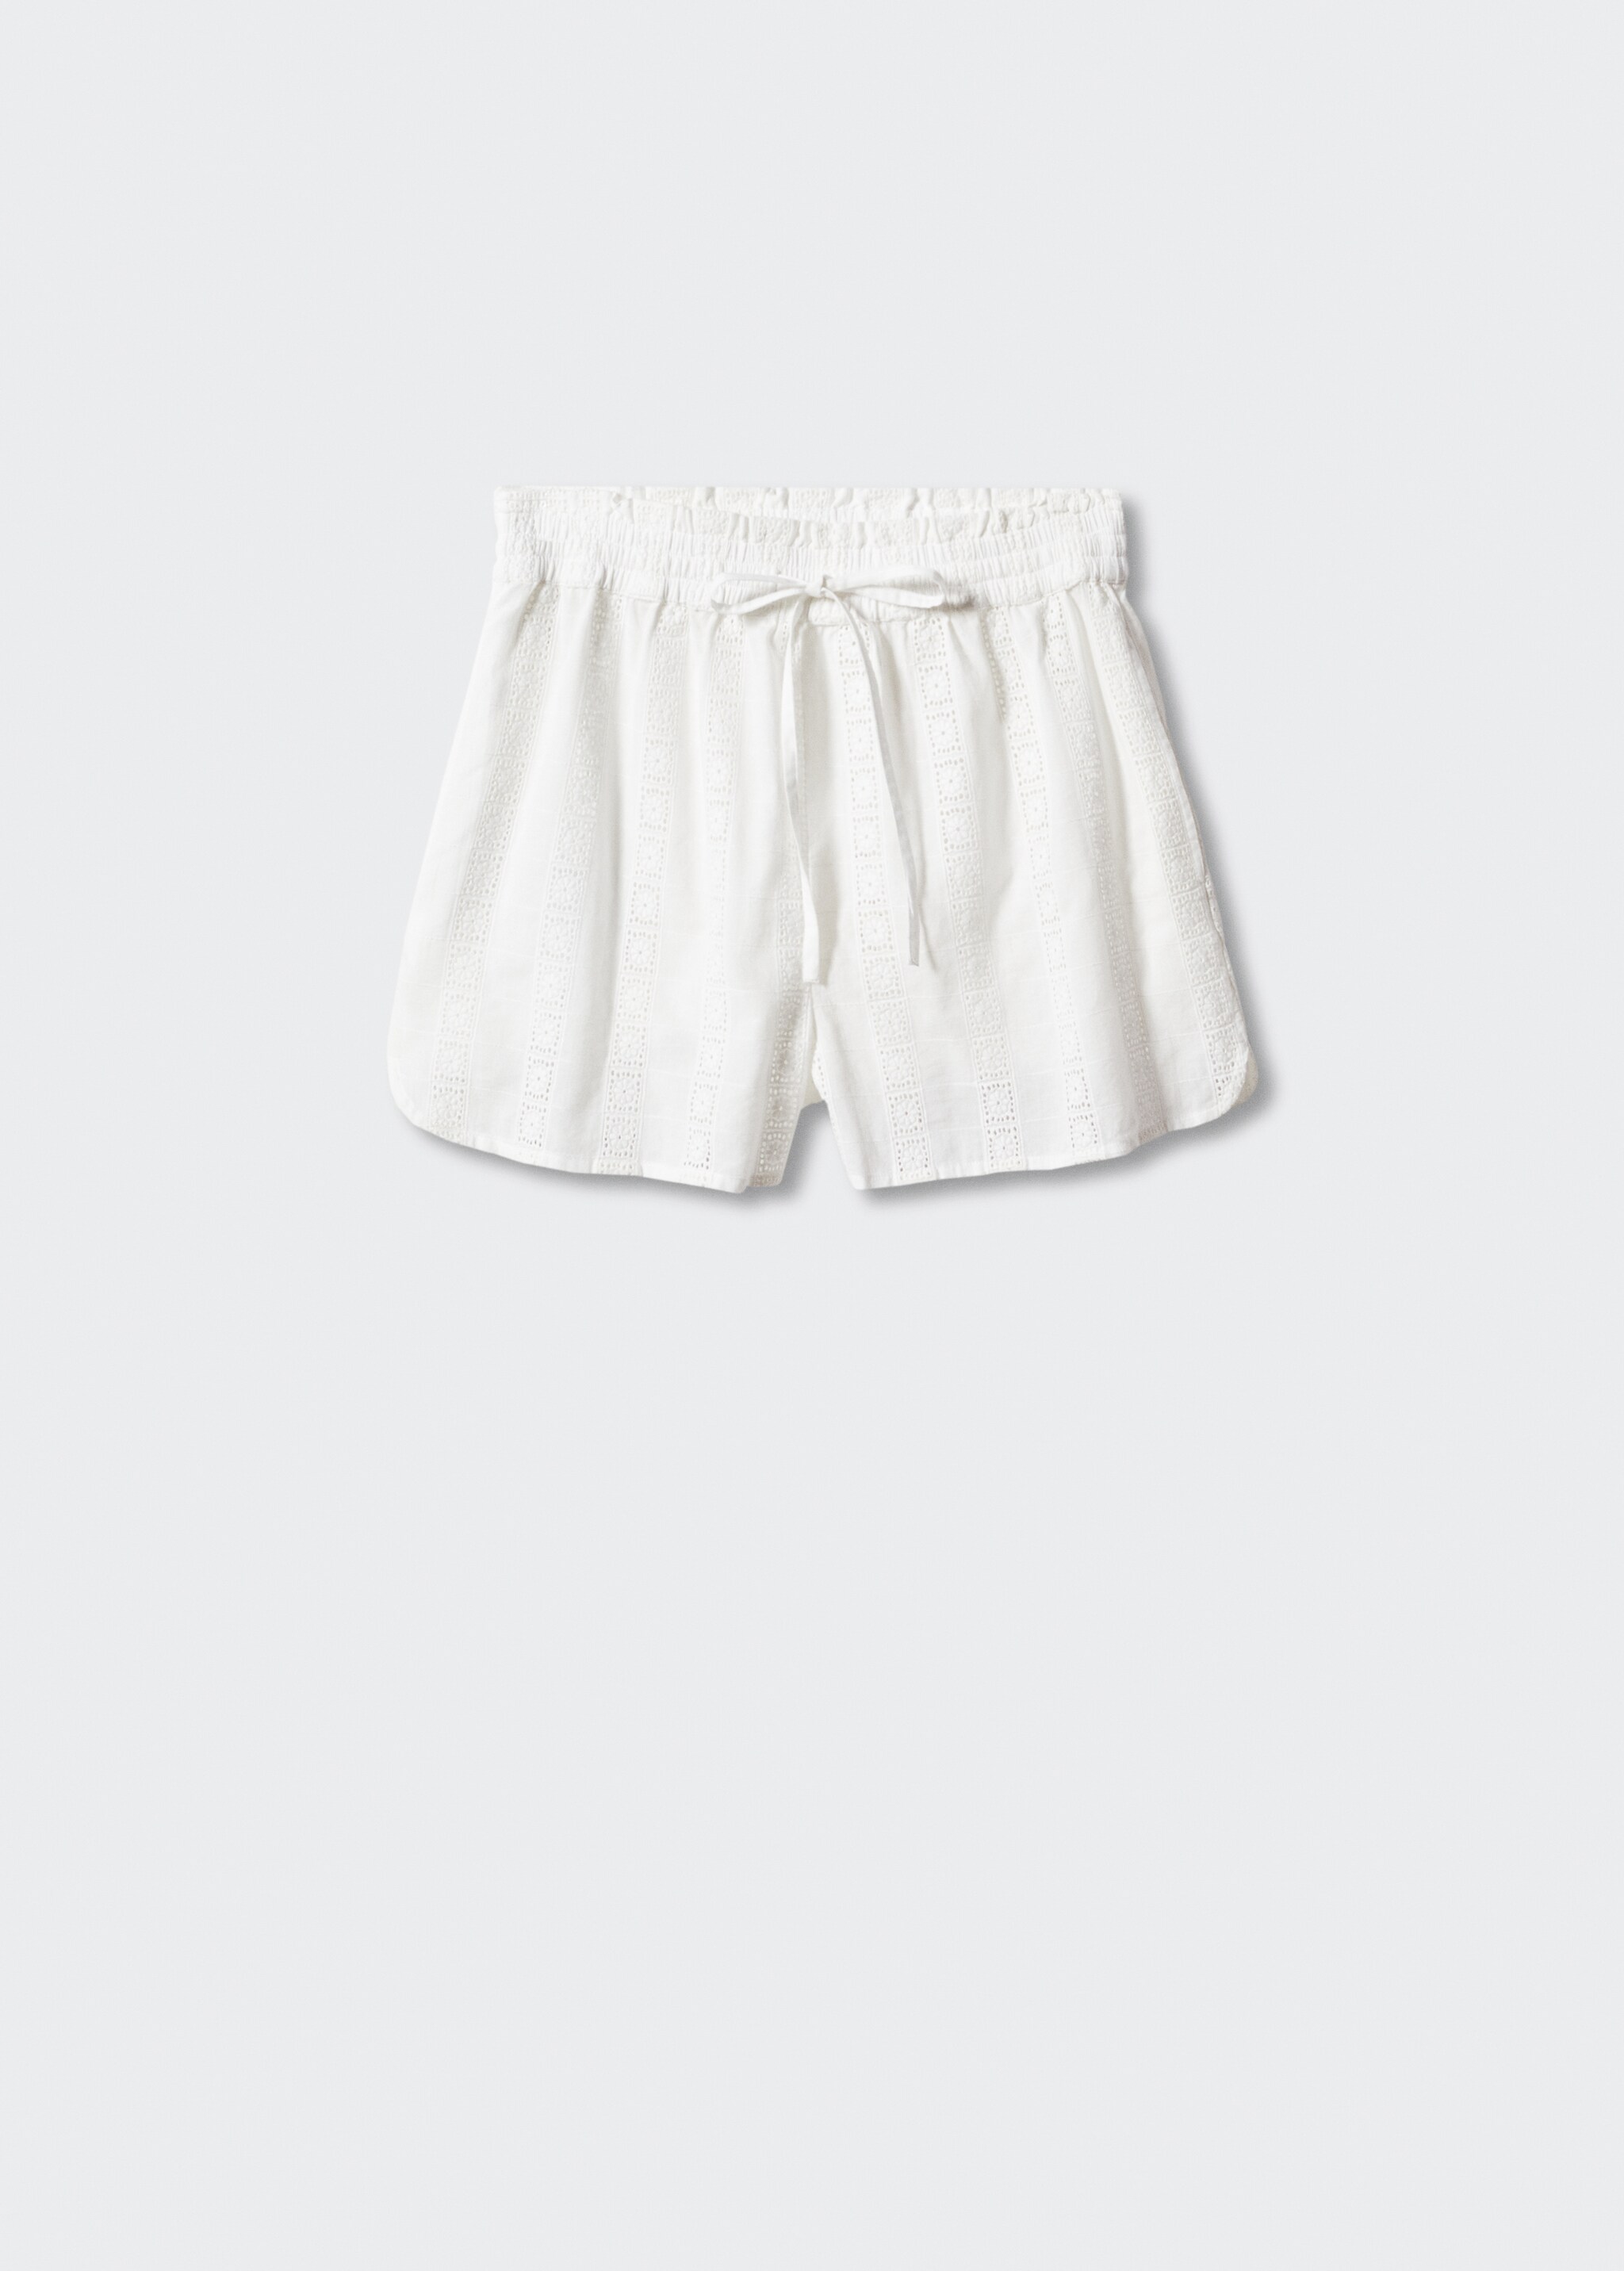 Shorts algodón bordados - Artículo sin modelo